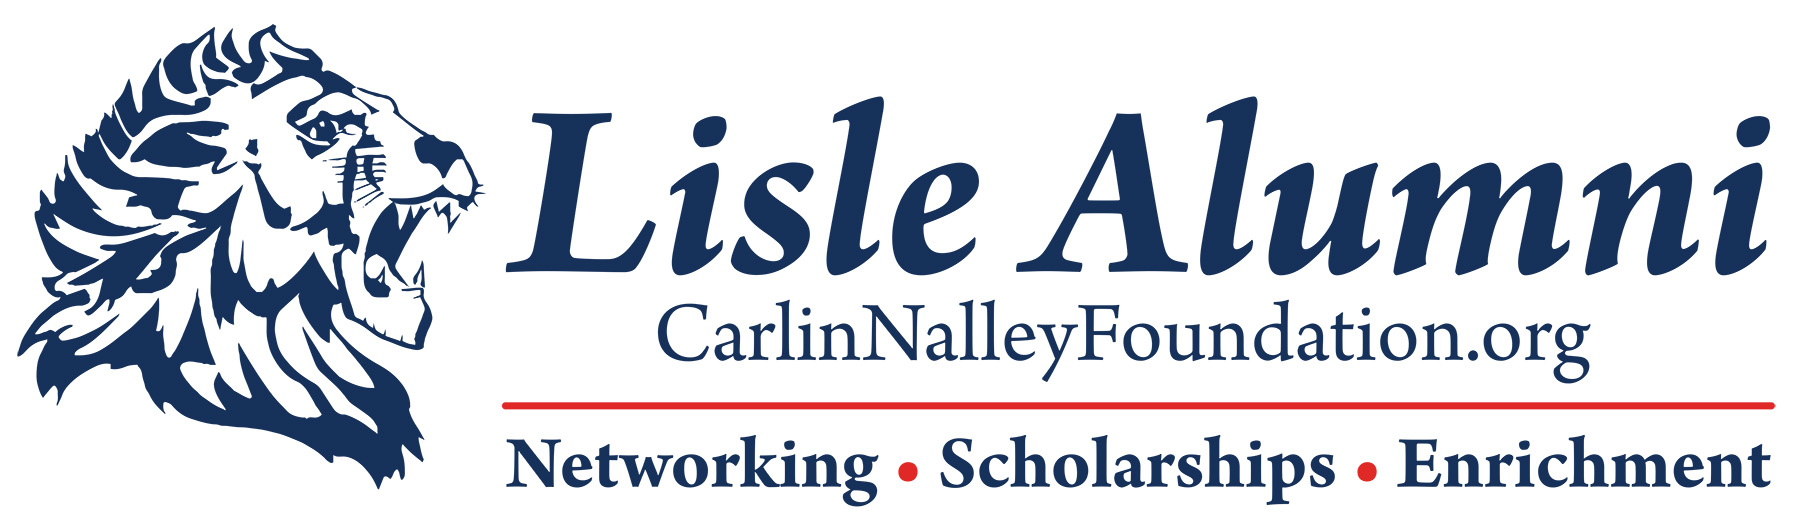 Carlin Nalley Foundation logo